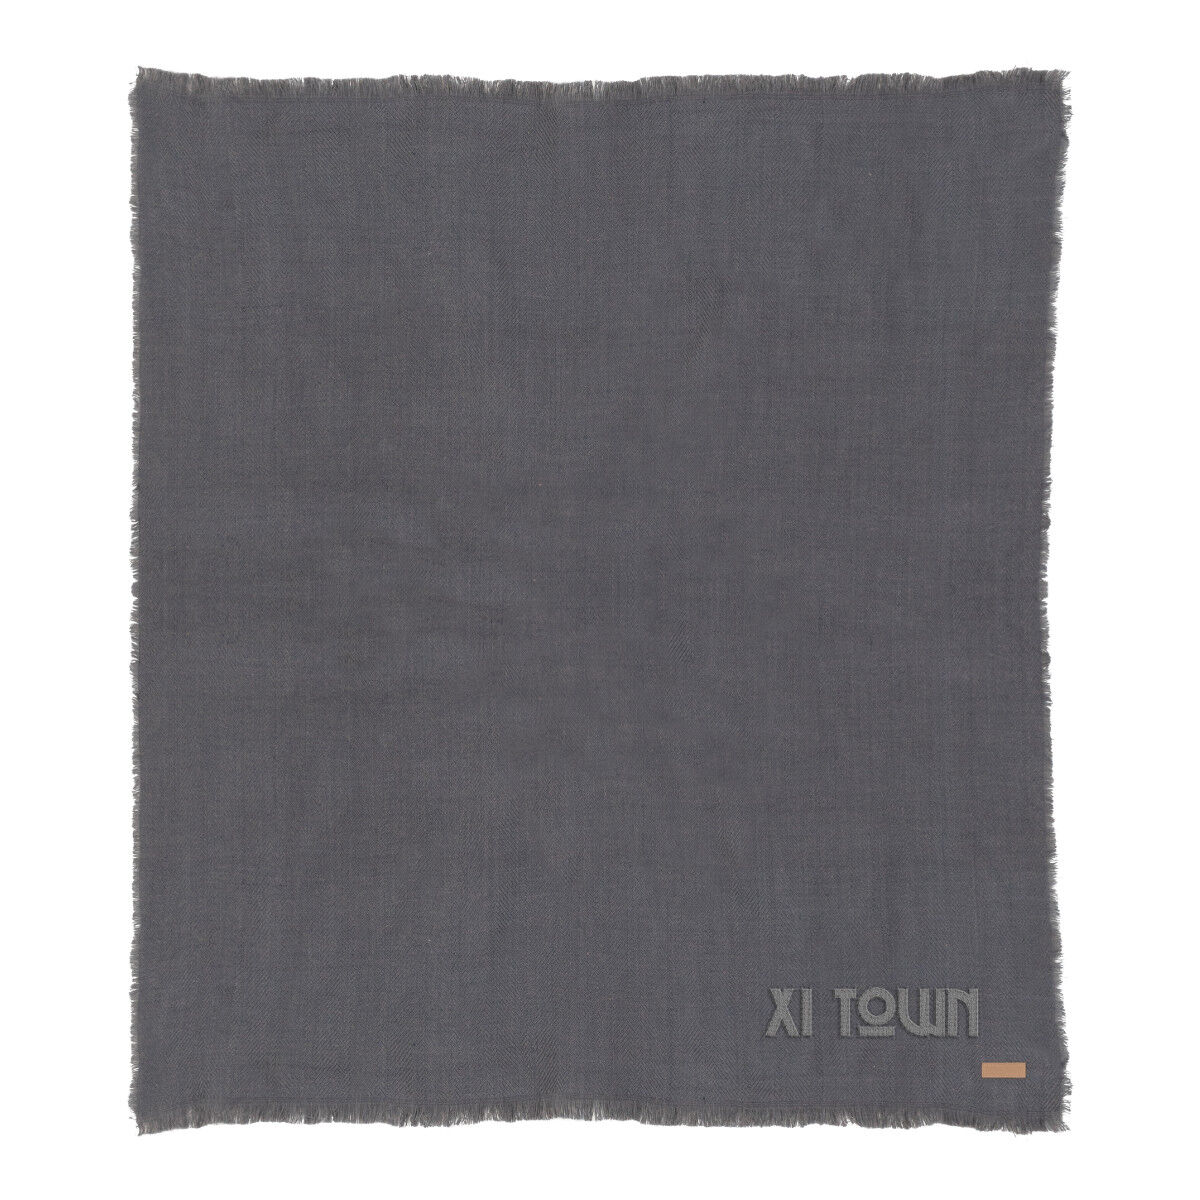 Ukiyo Polylana Woven Blanket (grey with sample branding)